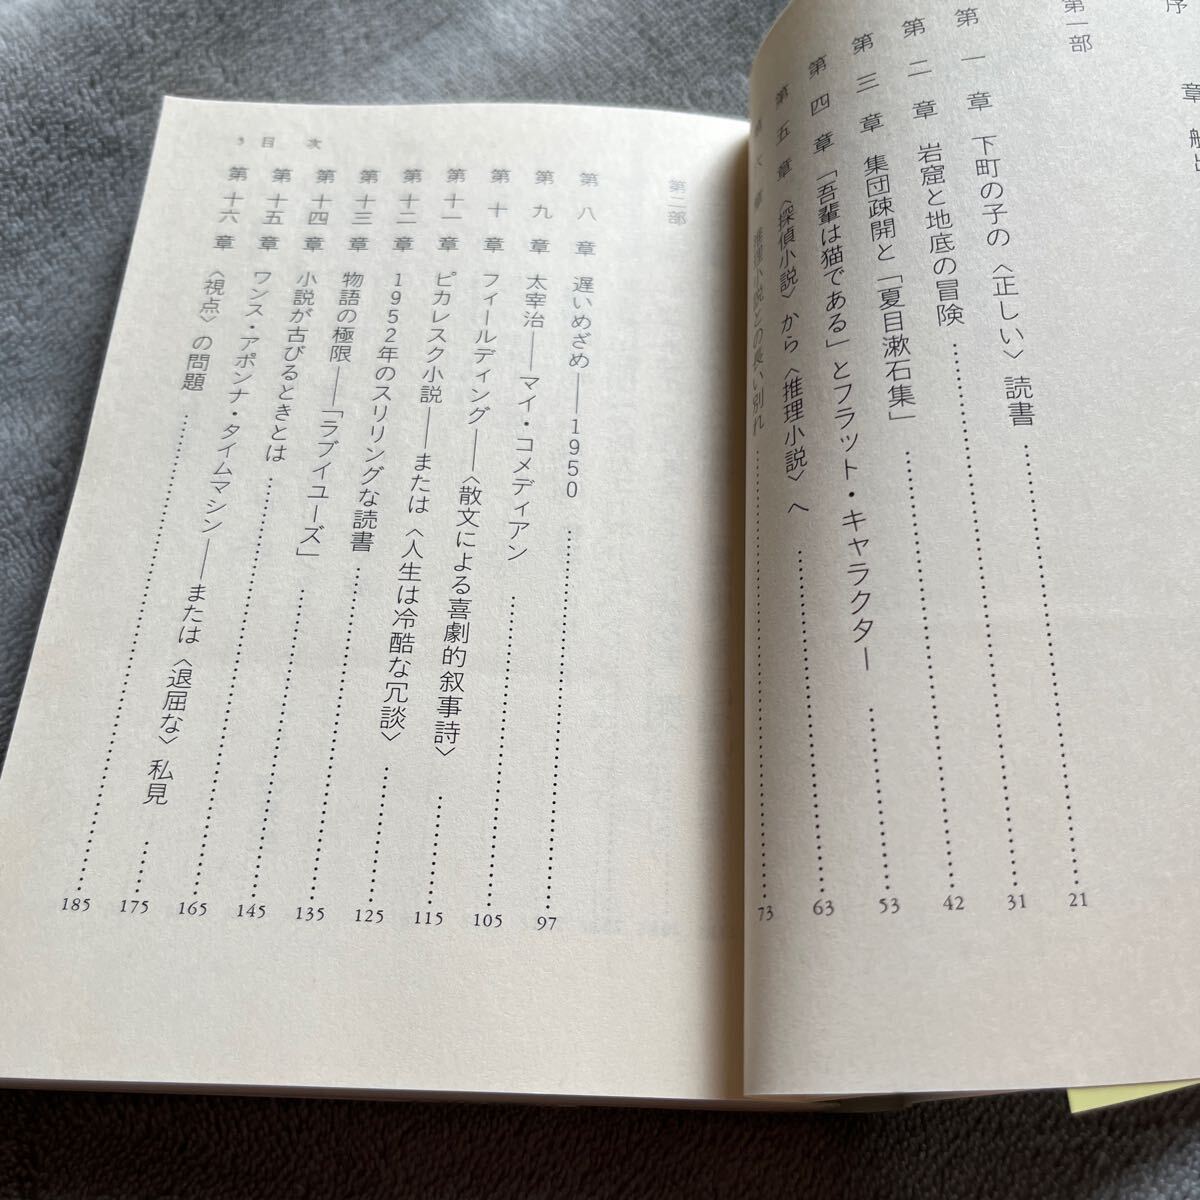 【署名本/初版】小林信彦『面白い小説を見つけるために』光文社 帯付き サイン本の画像6